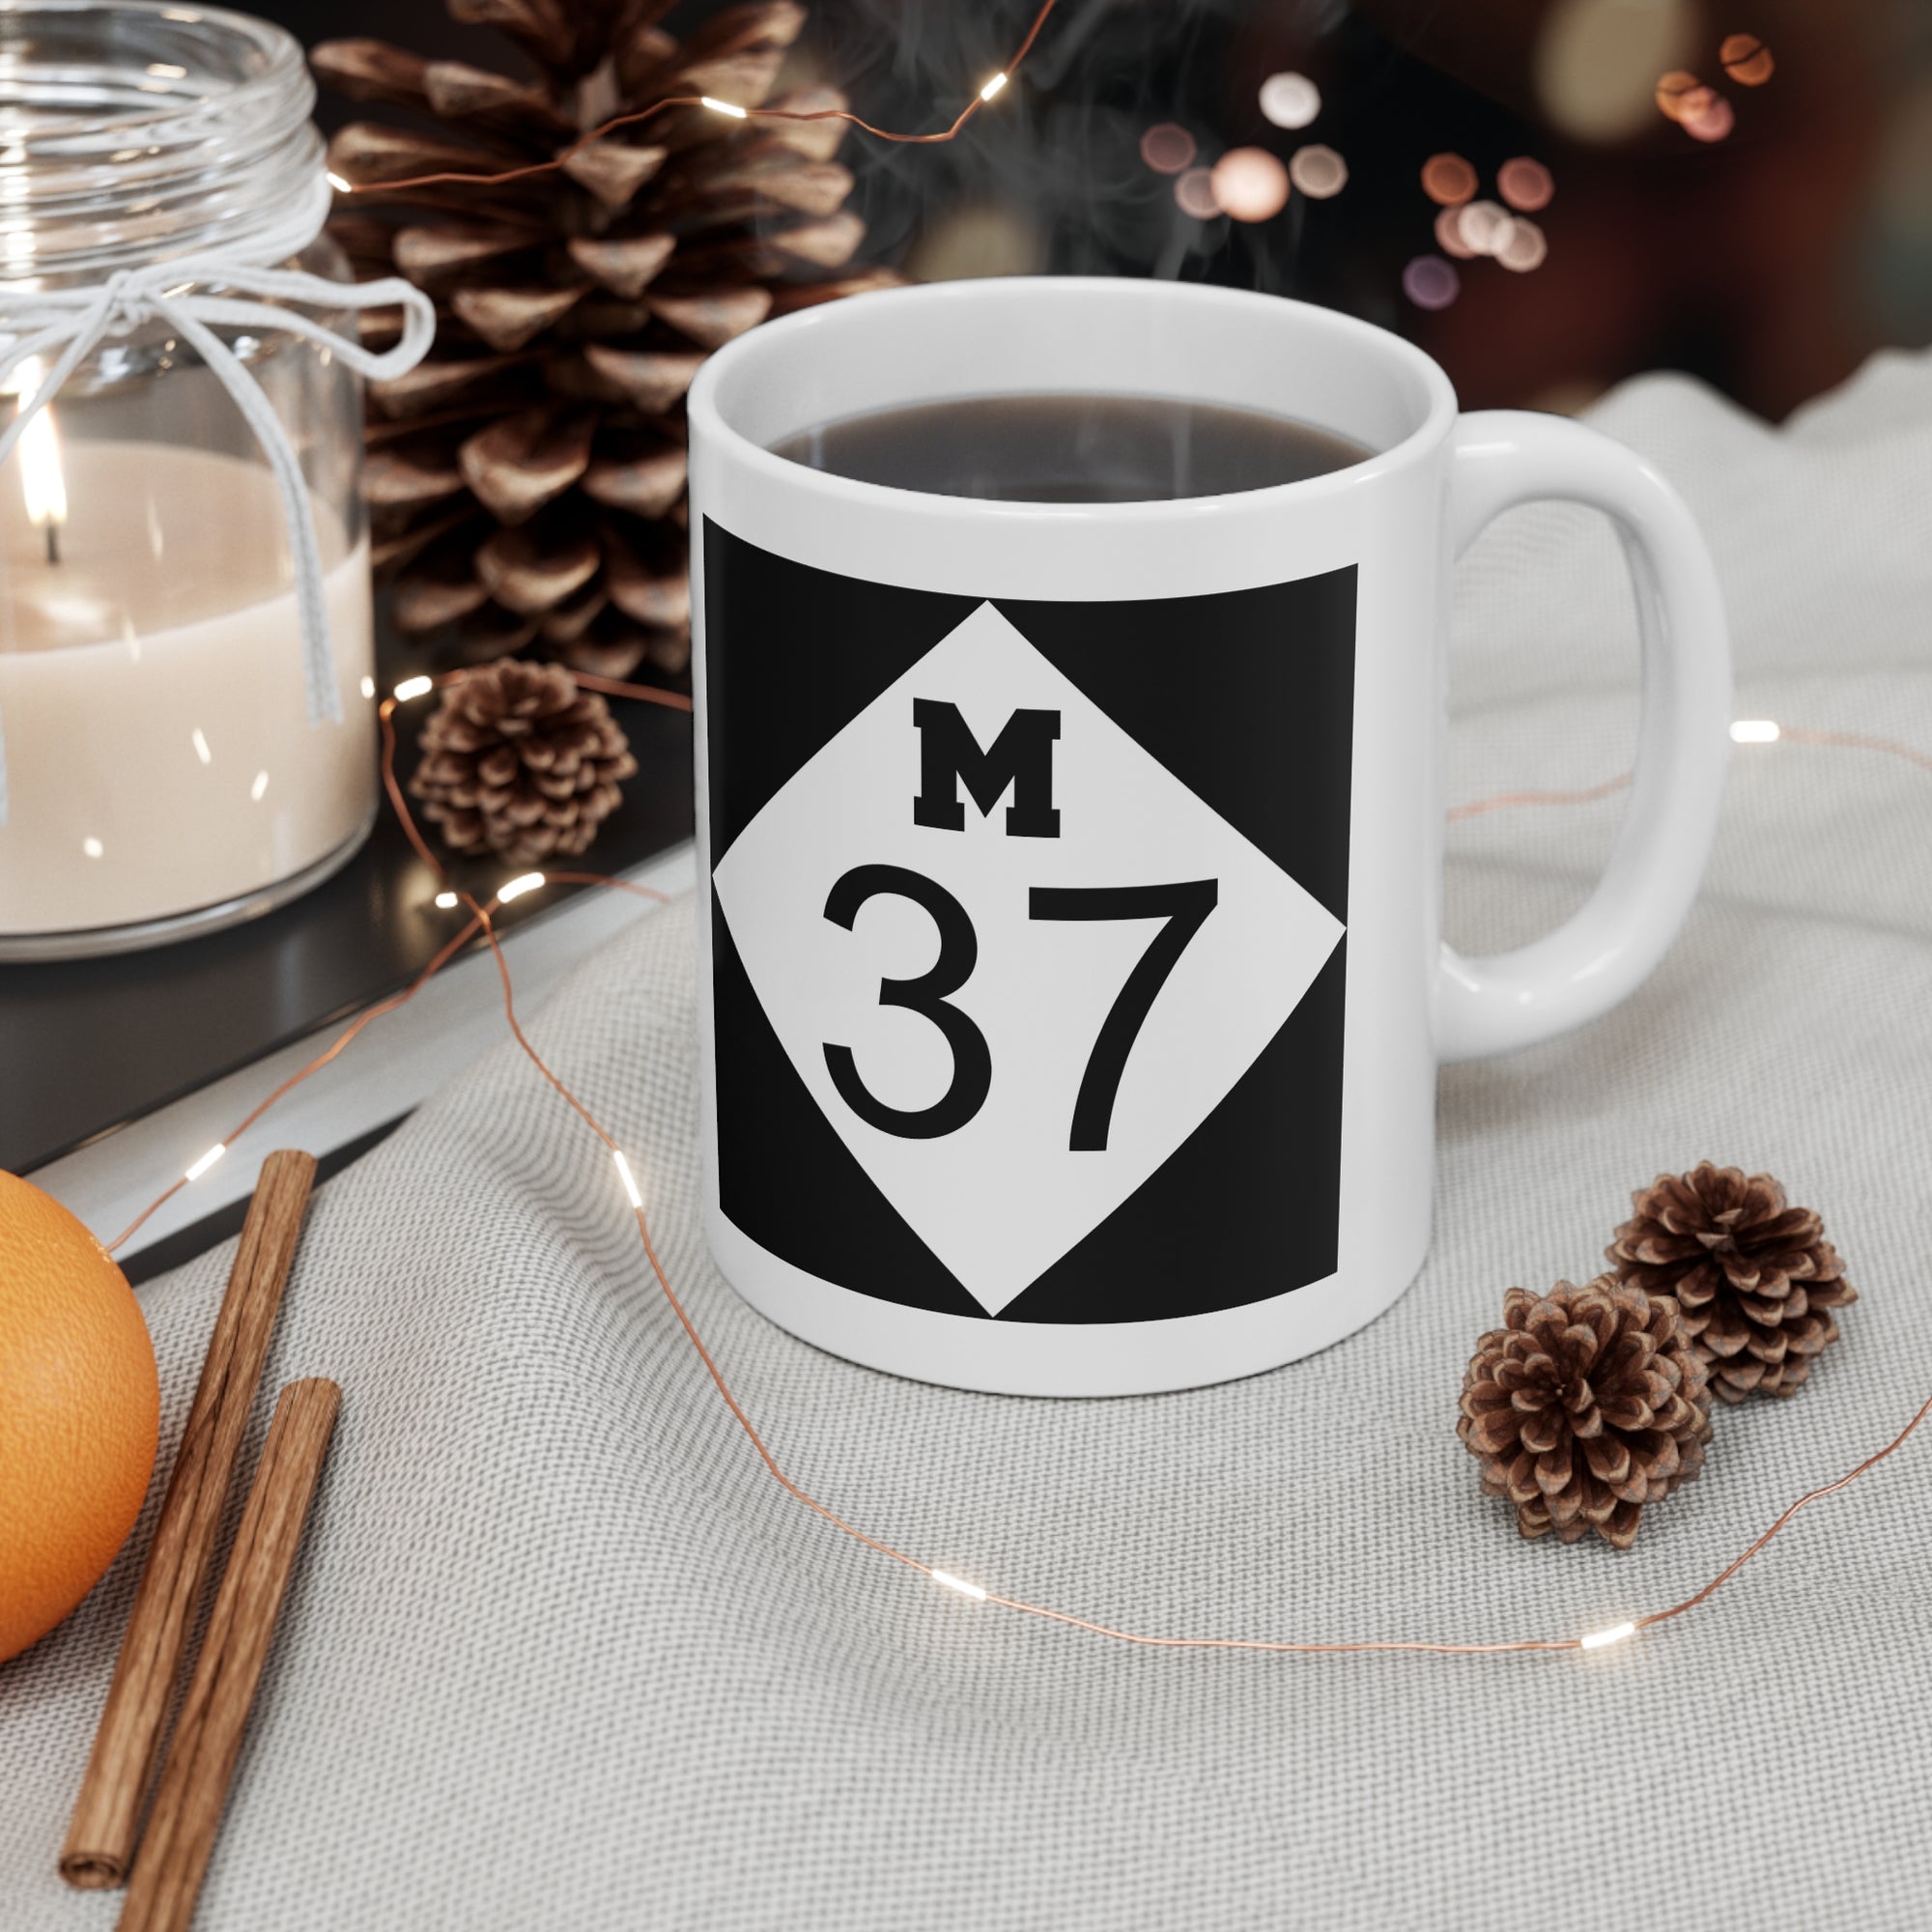 M37 Ceramic Mug 11 oz.